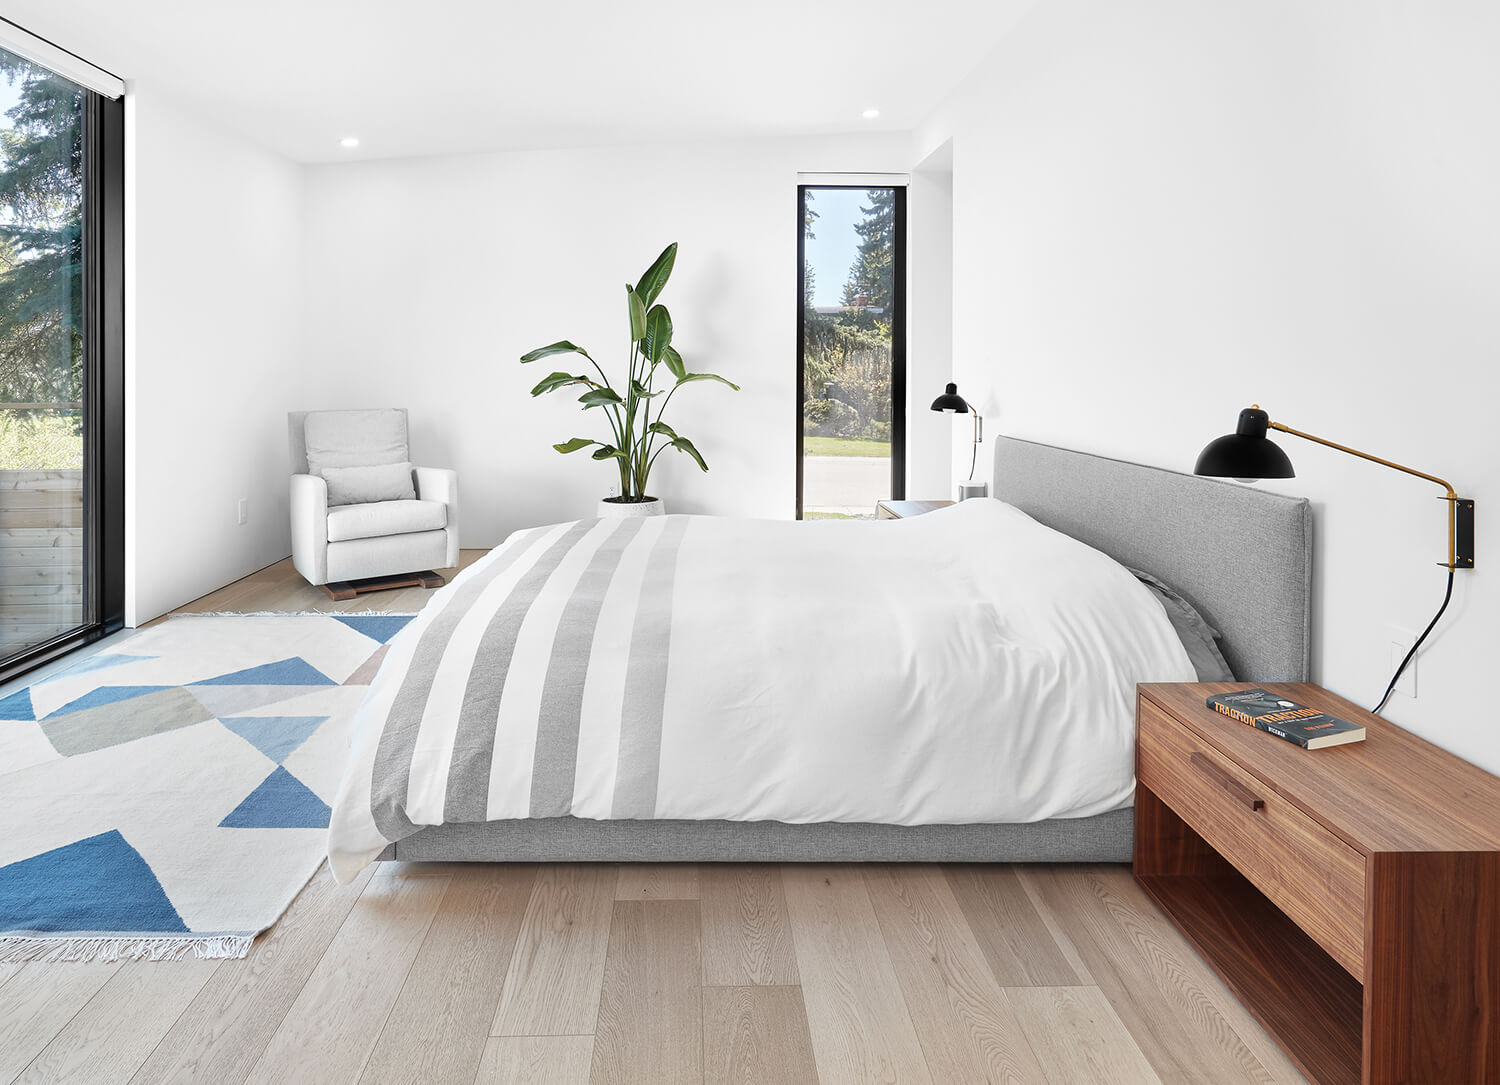 Bedroom_GreyBed_WoodenTable_LargeWindow